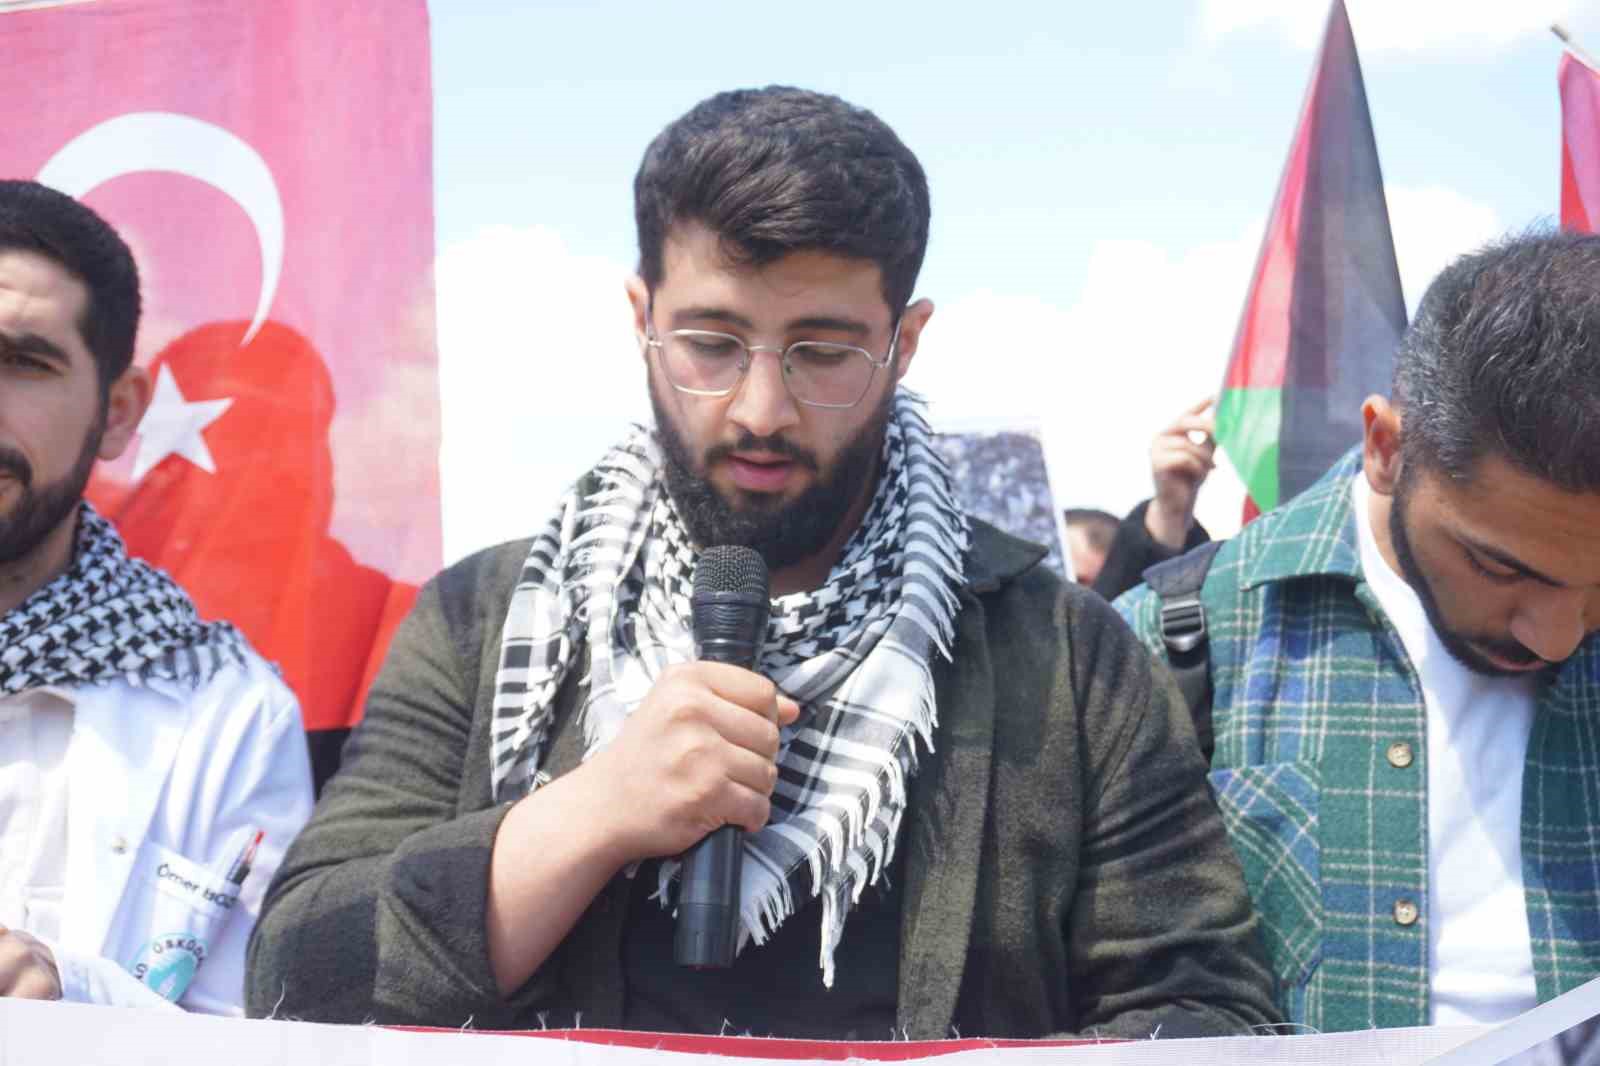 Edirne’de üniversite öğrencilerinden Gazze’ye destek protestosu
